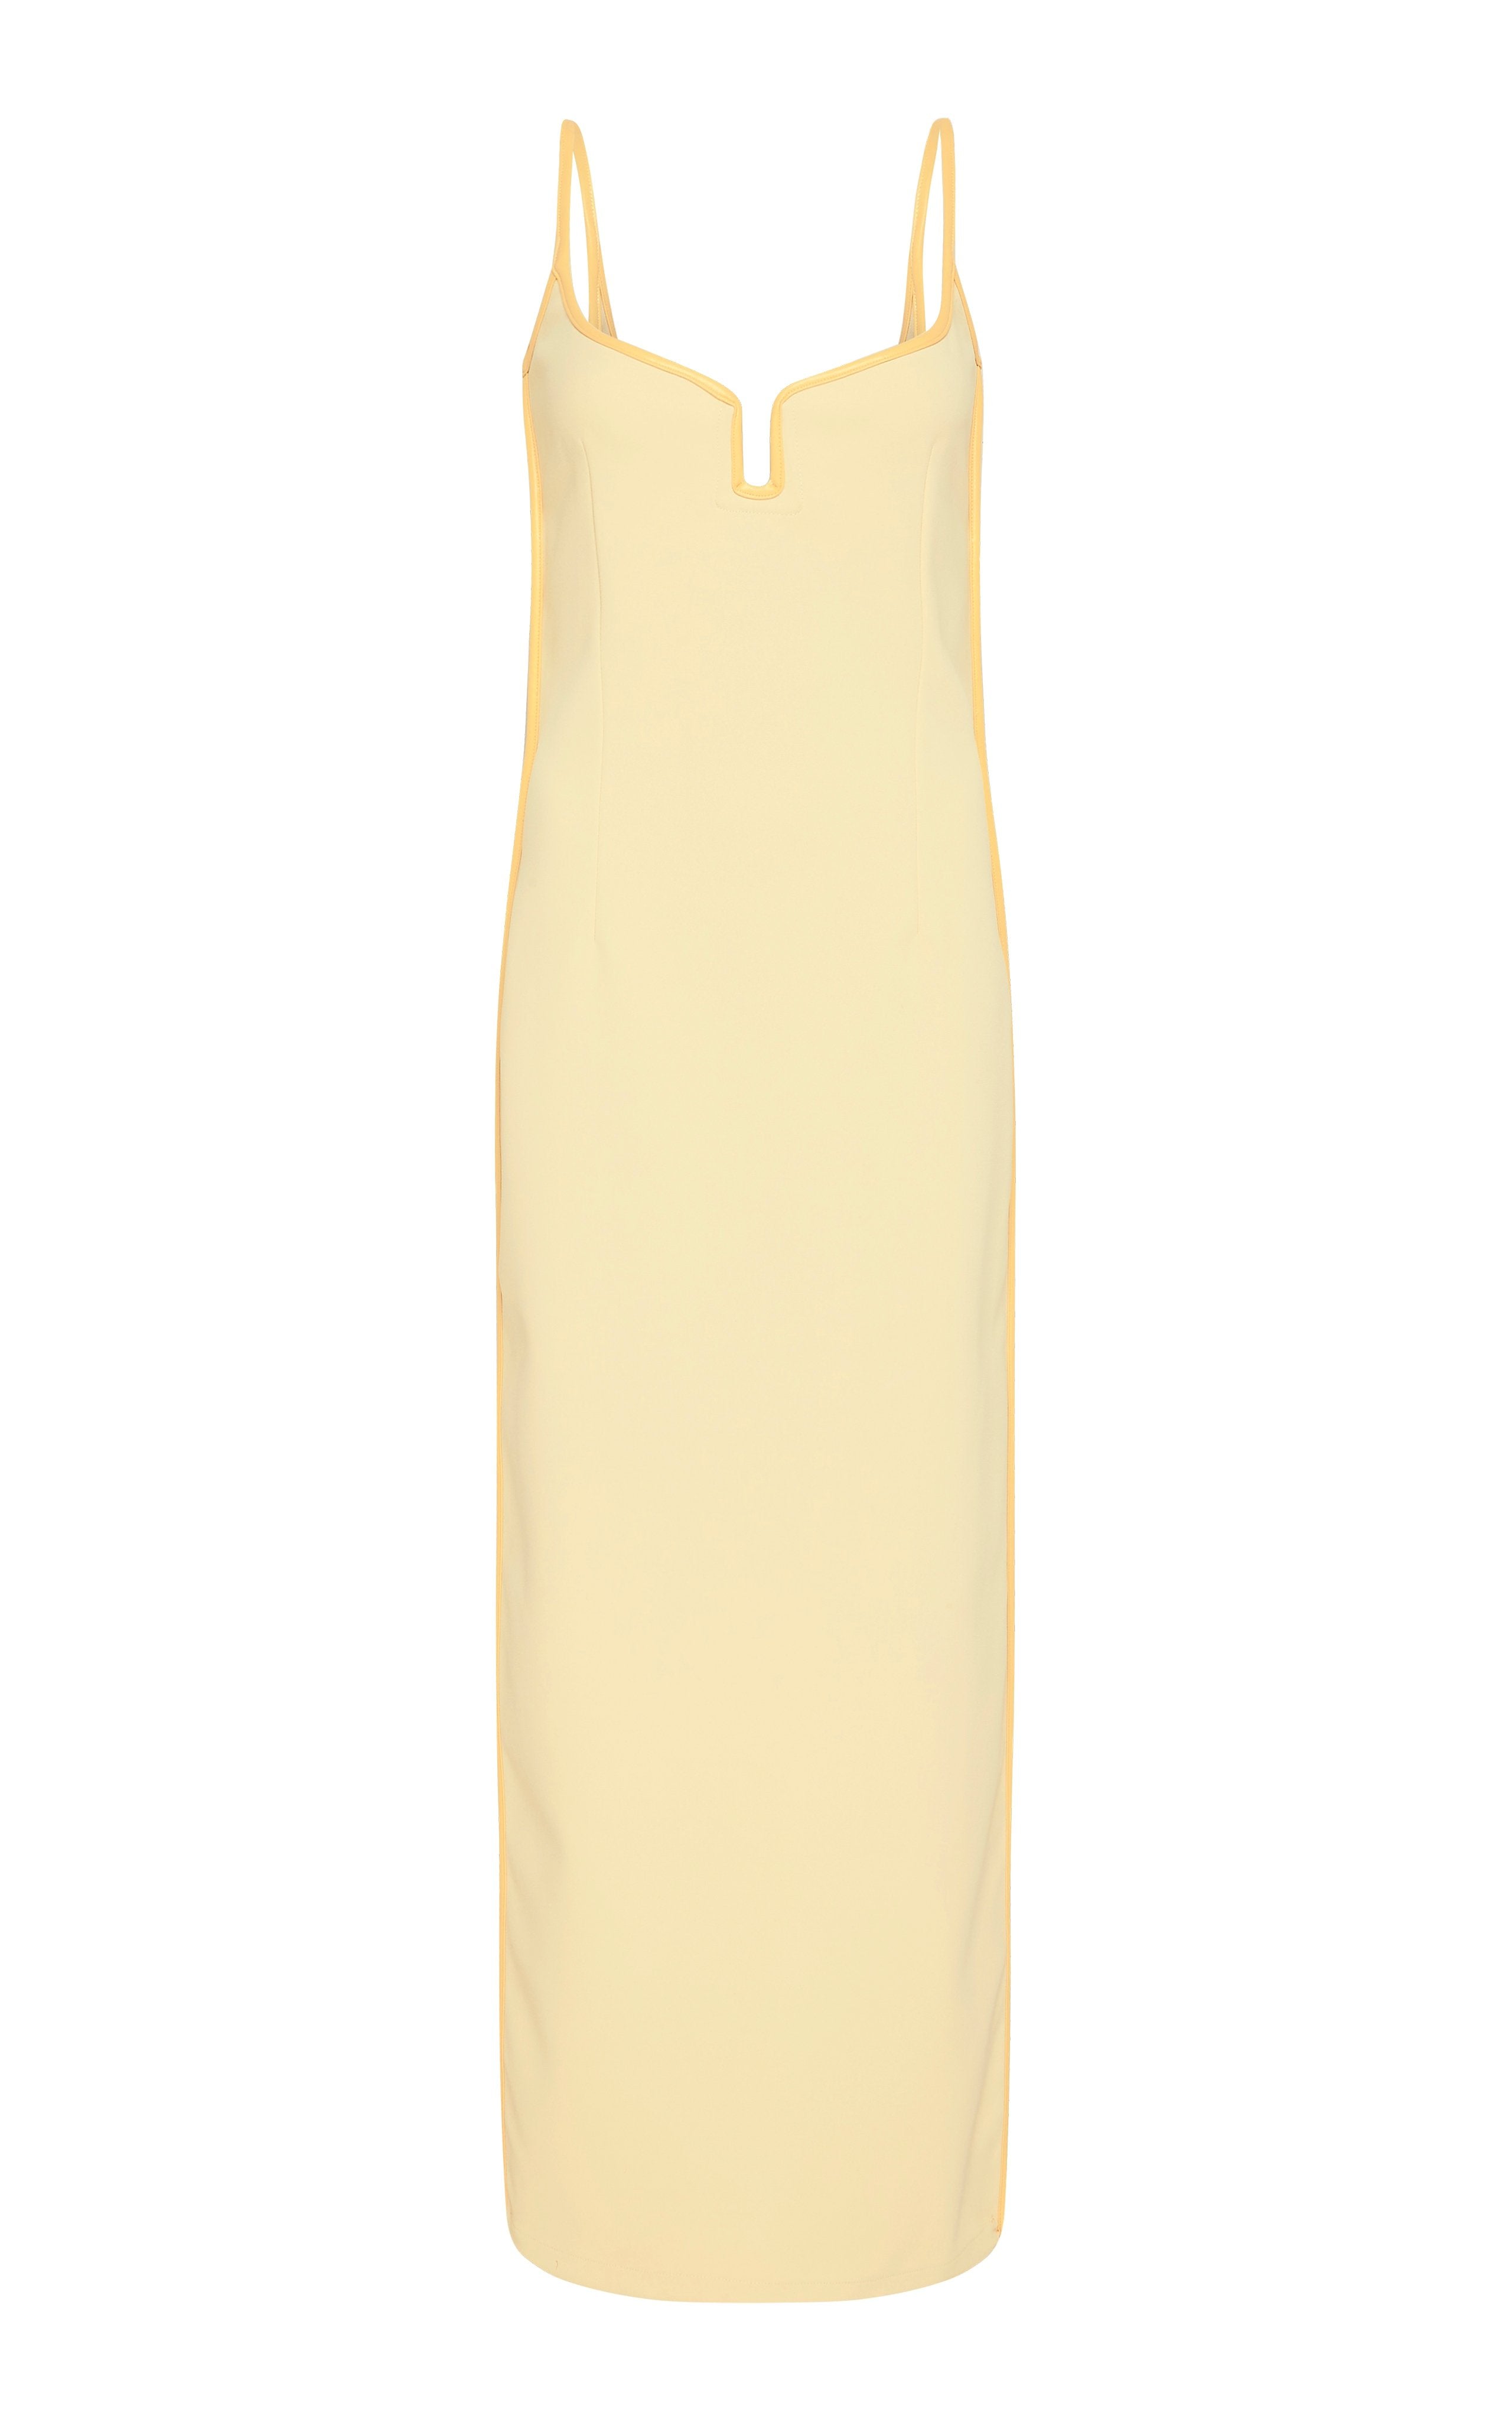 Marlo Dress in Daffy Yellow (10) - Paris Georgia